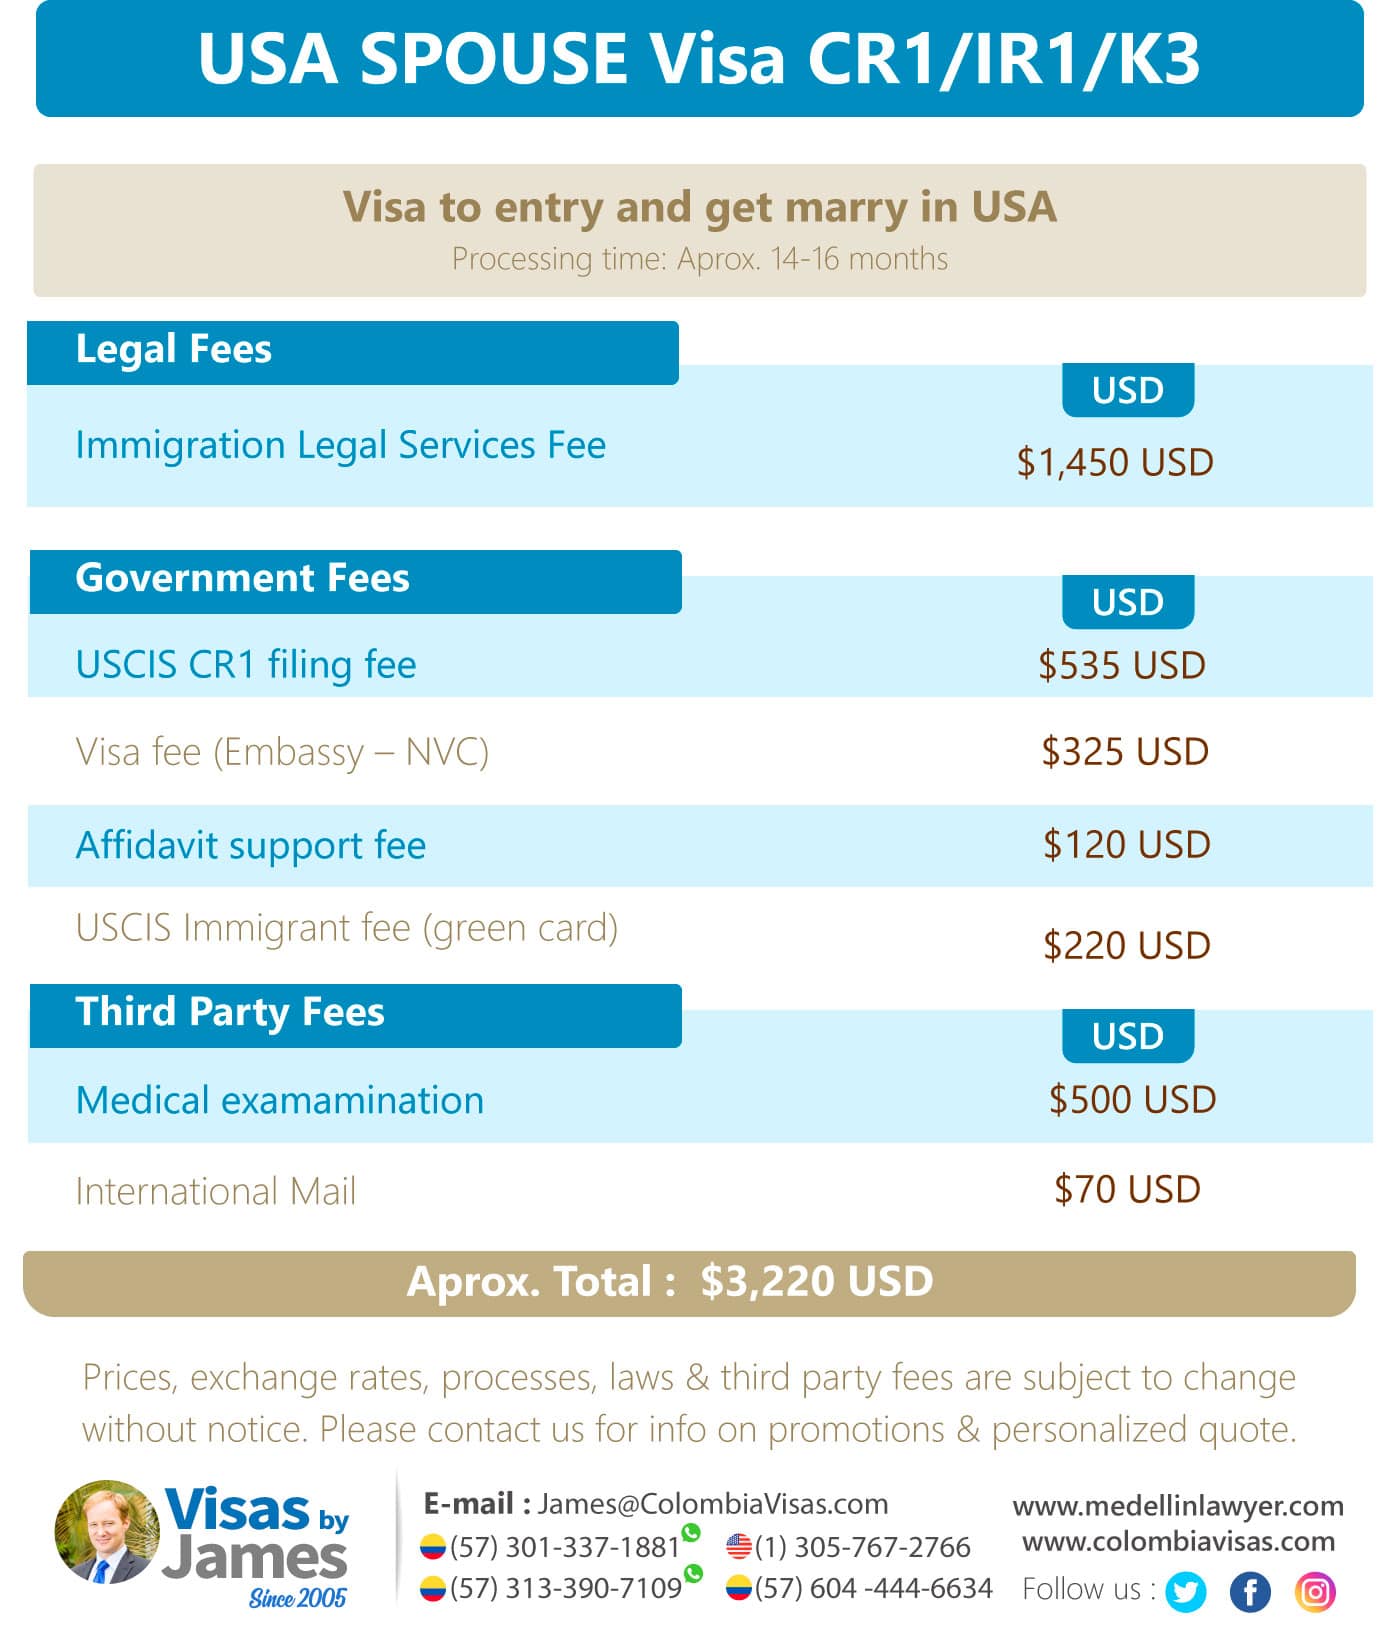 USA-SPOUSE-Visa-CR1-IR1-K3